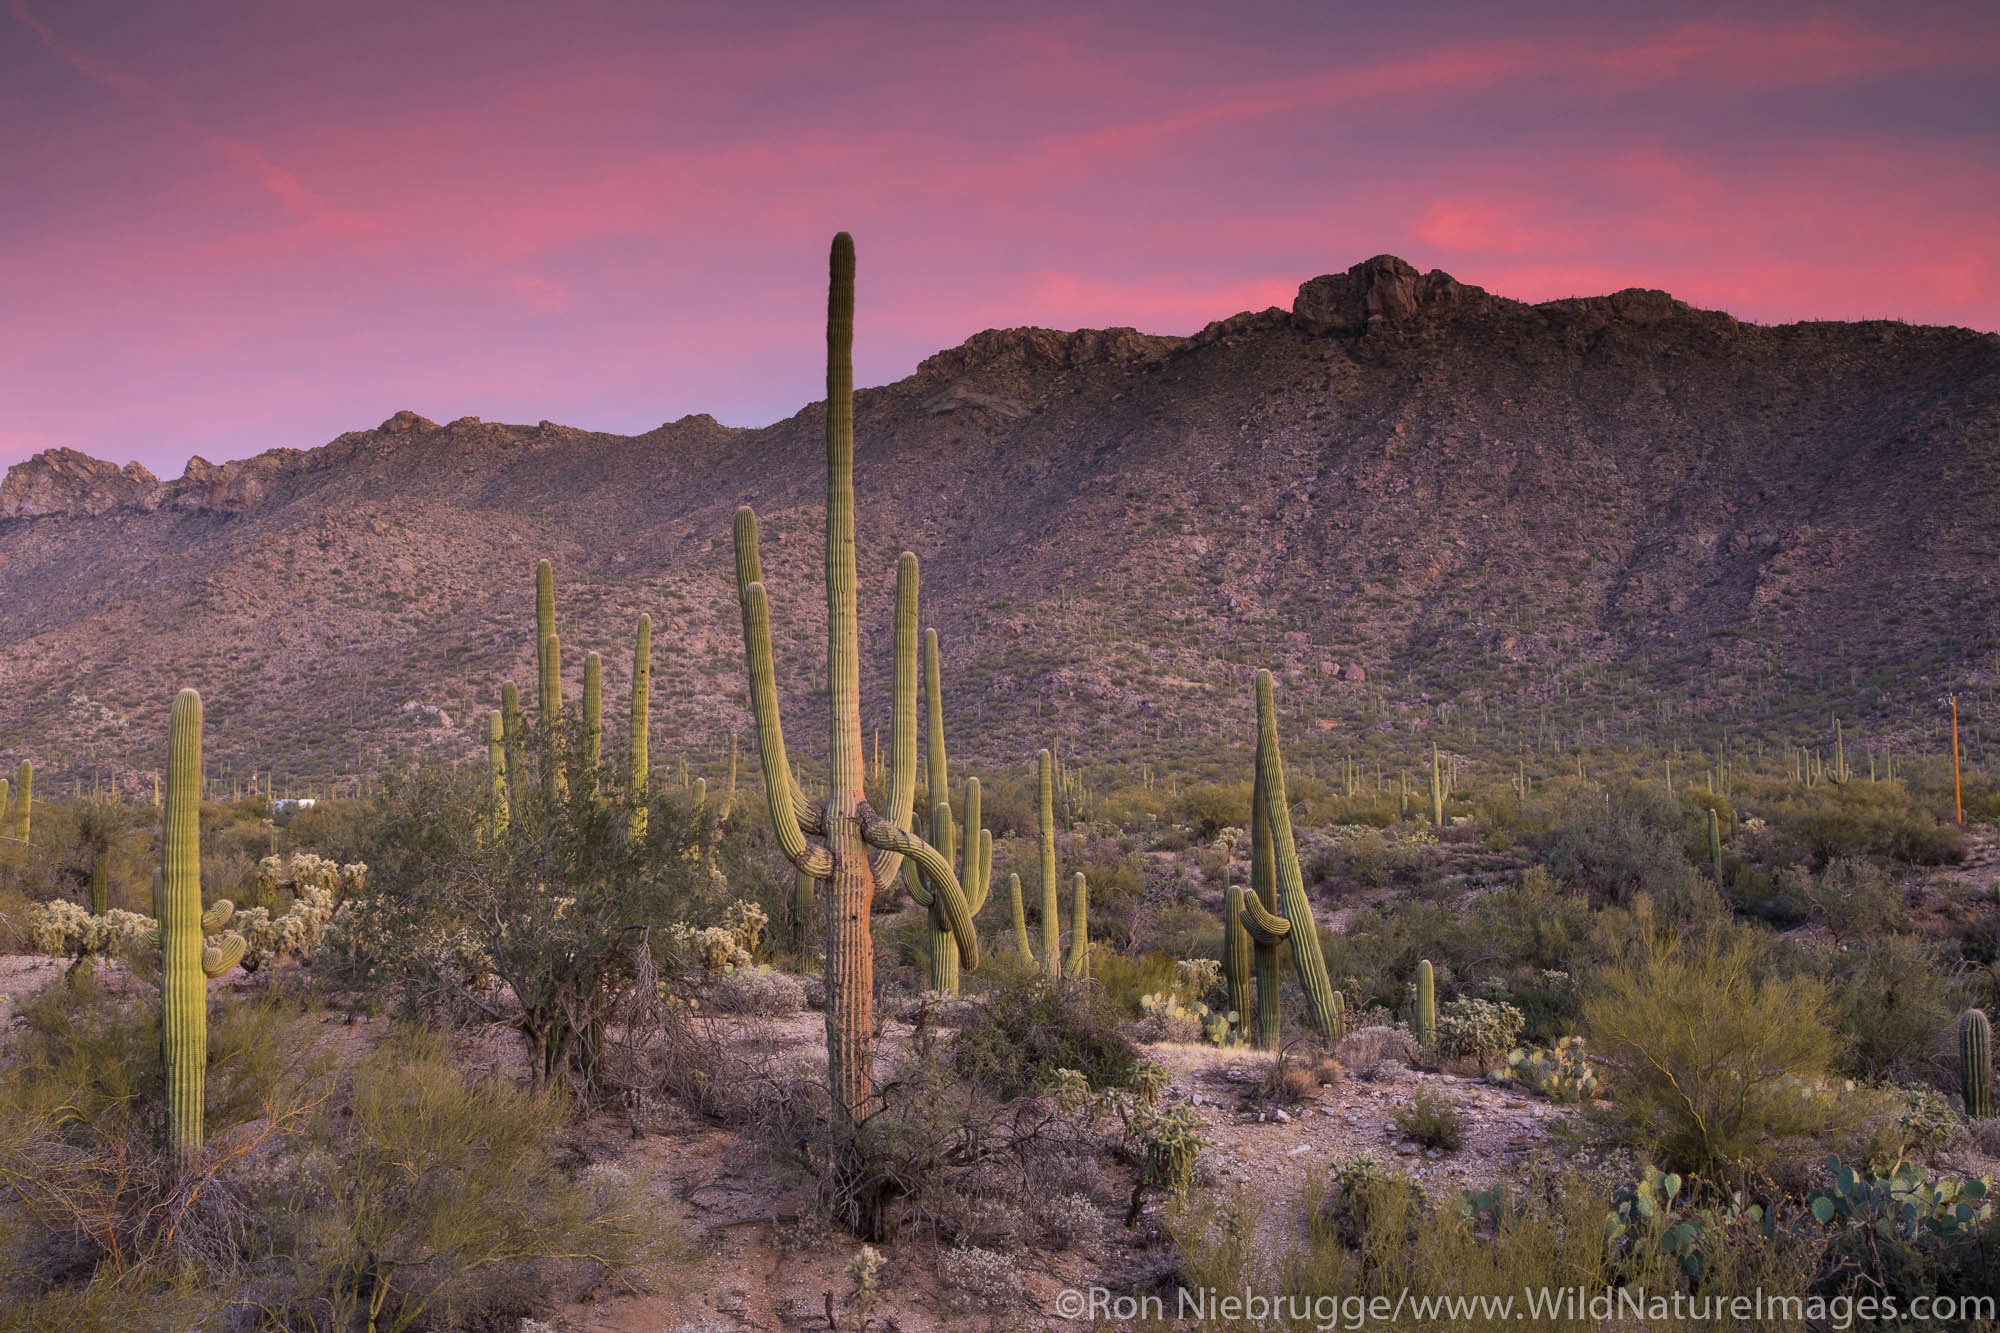 Sunset in the Tortolita Mountains, Arizona.